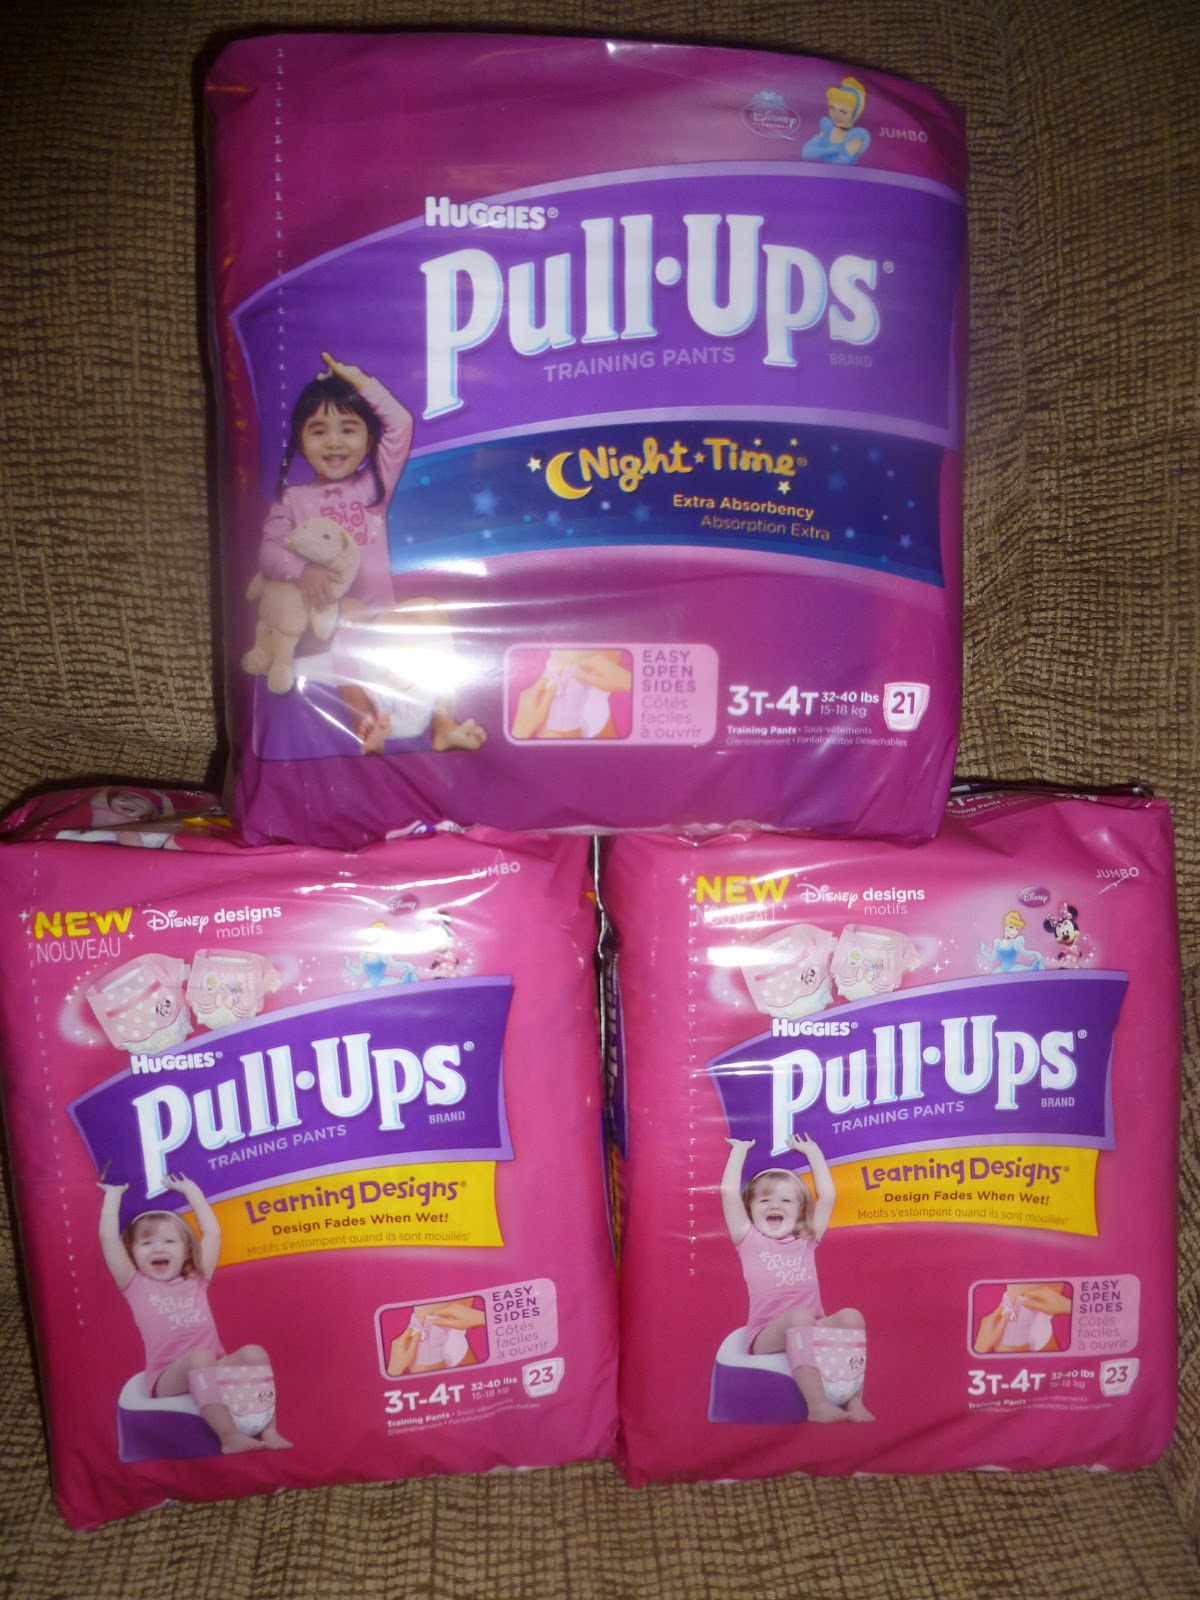 Girls in Diaper-Pull-Ups 3, 27 @iMGSRC.RU